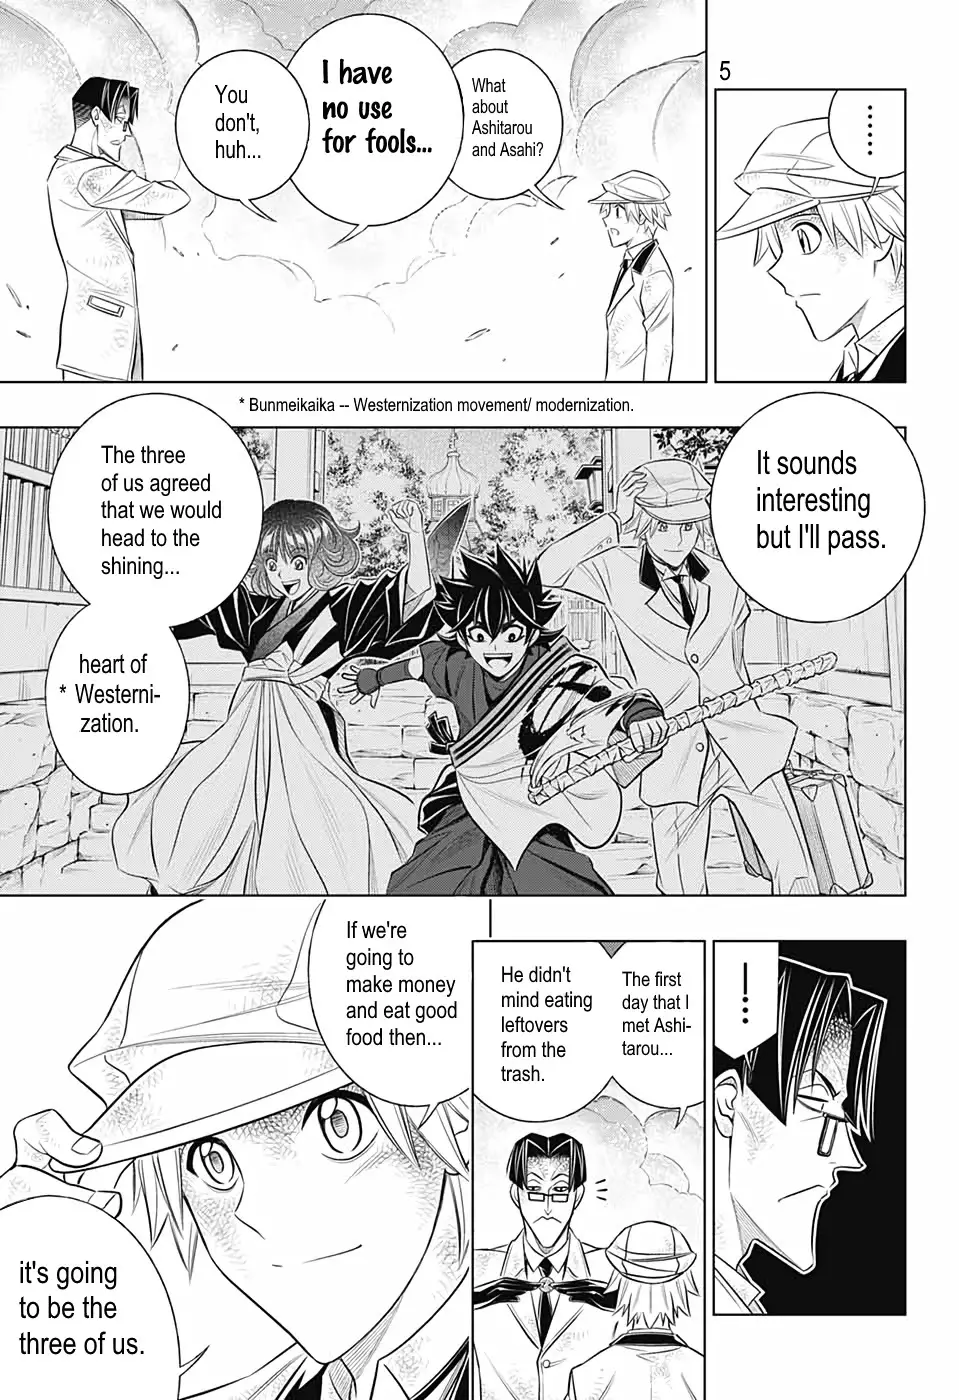 Rurouni Kenshin: Hokkaido Arc - 34 page 4